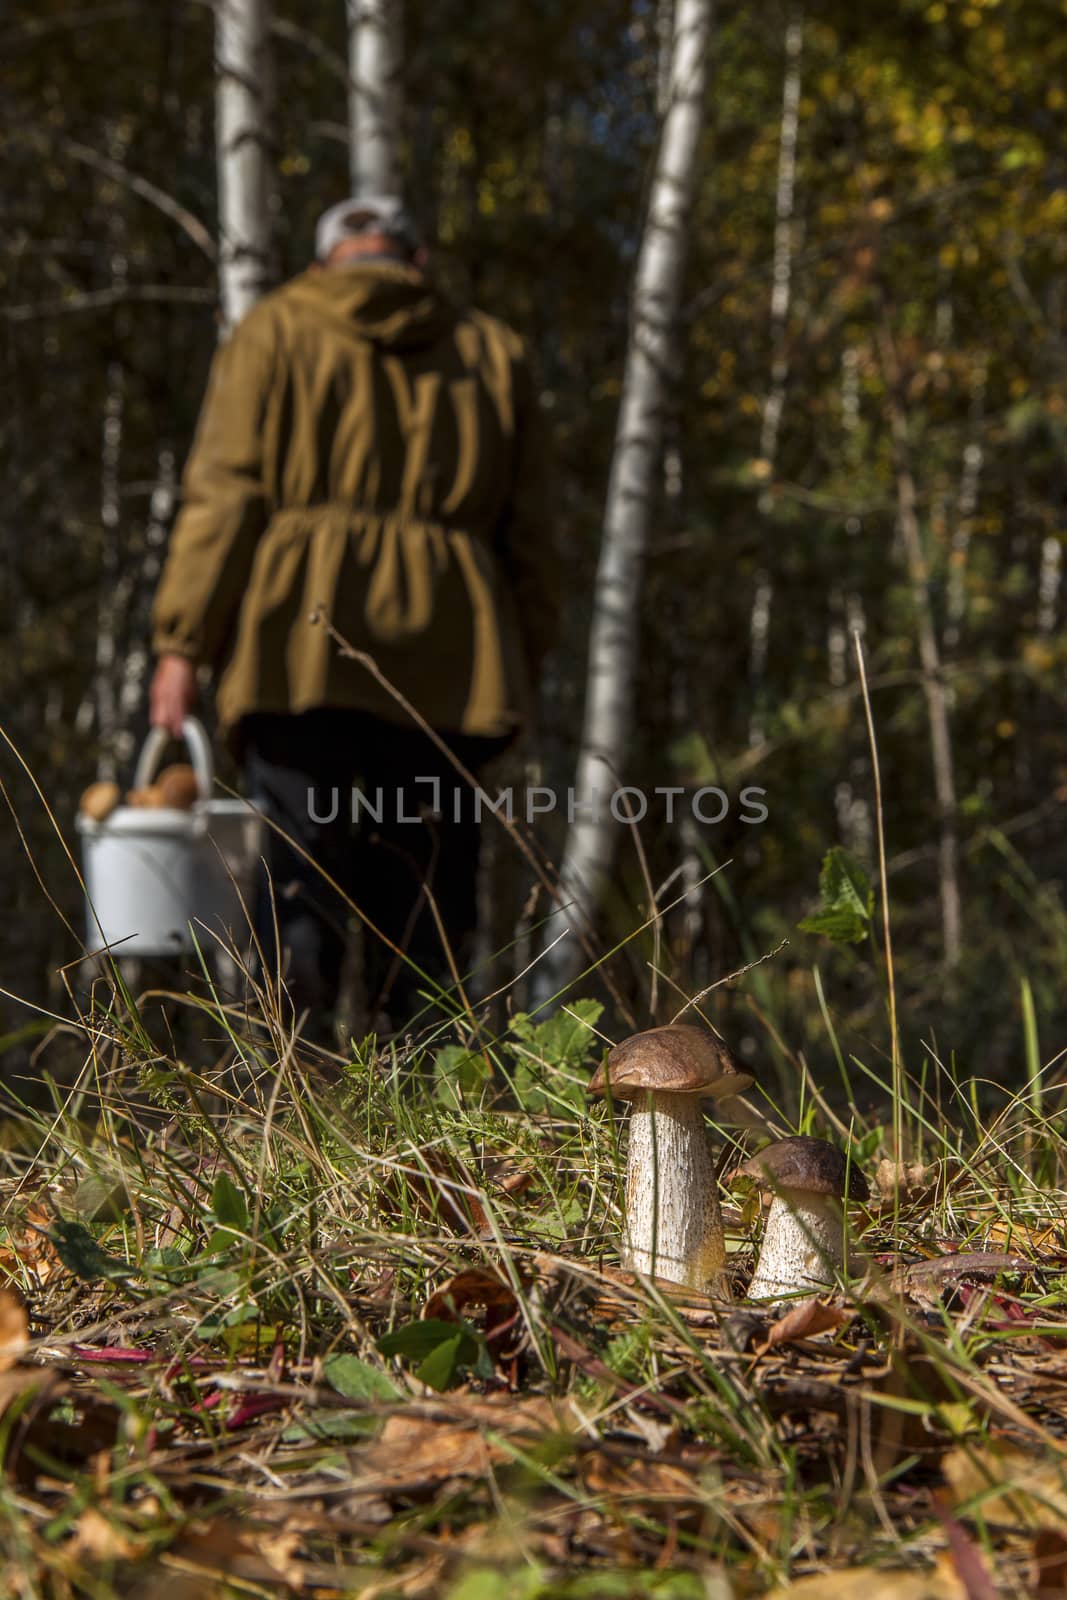 mushroom picker, who missed two boletus